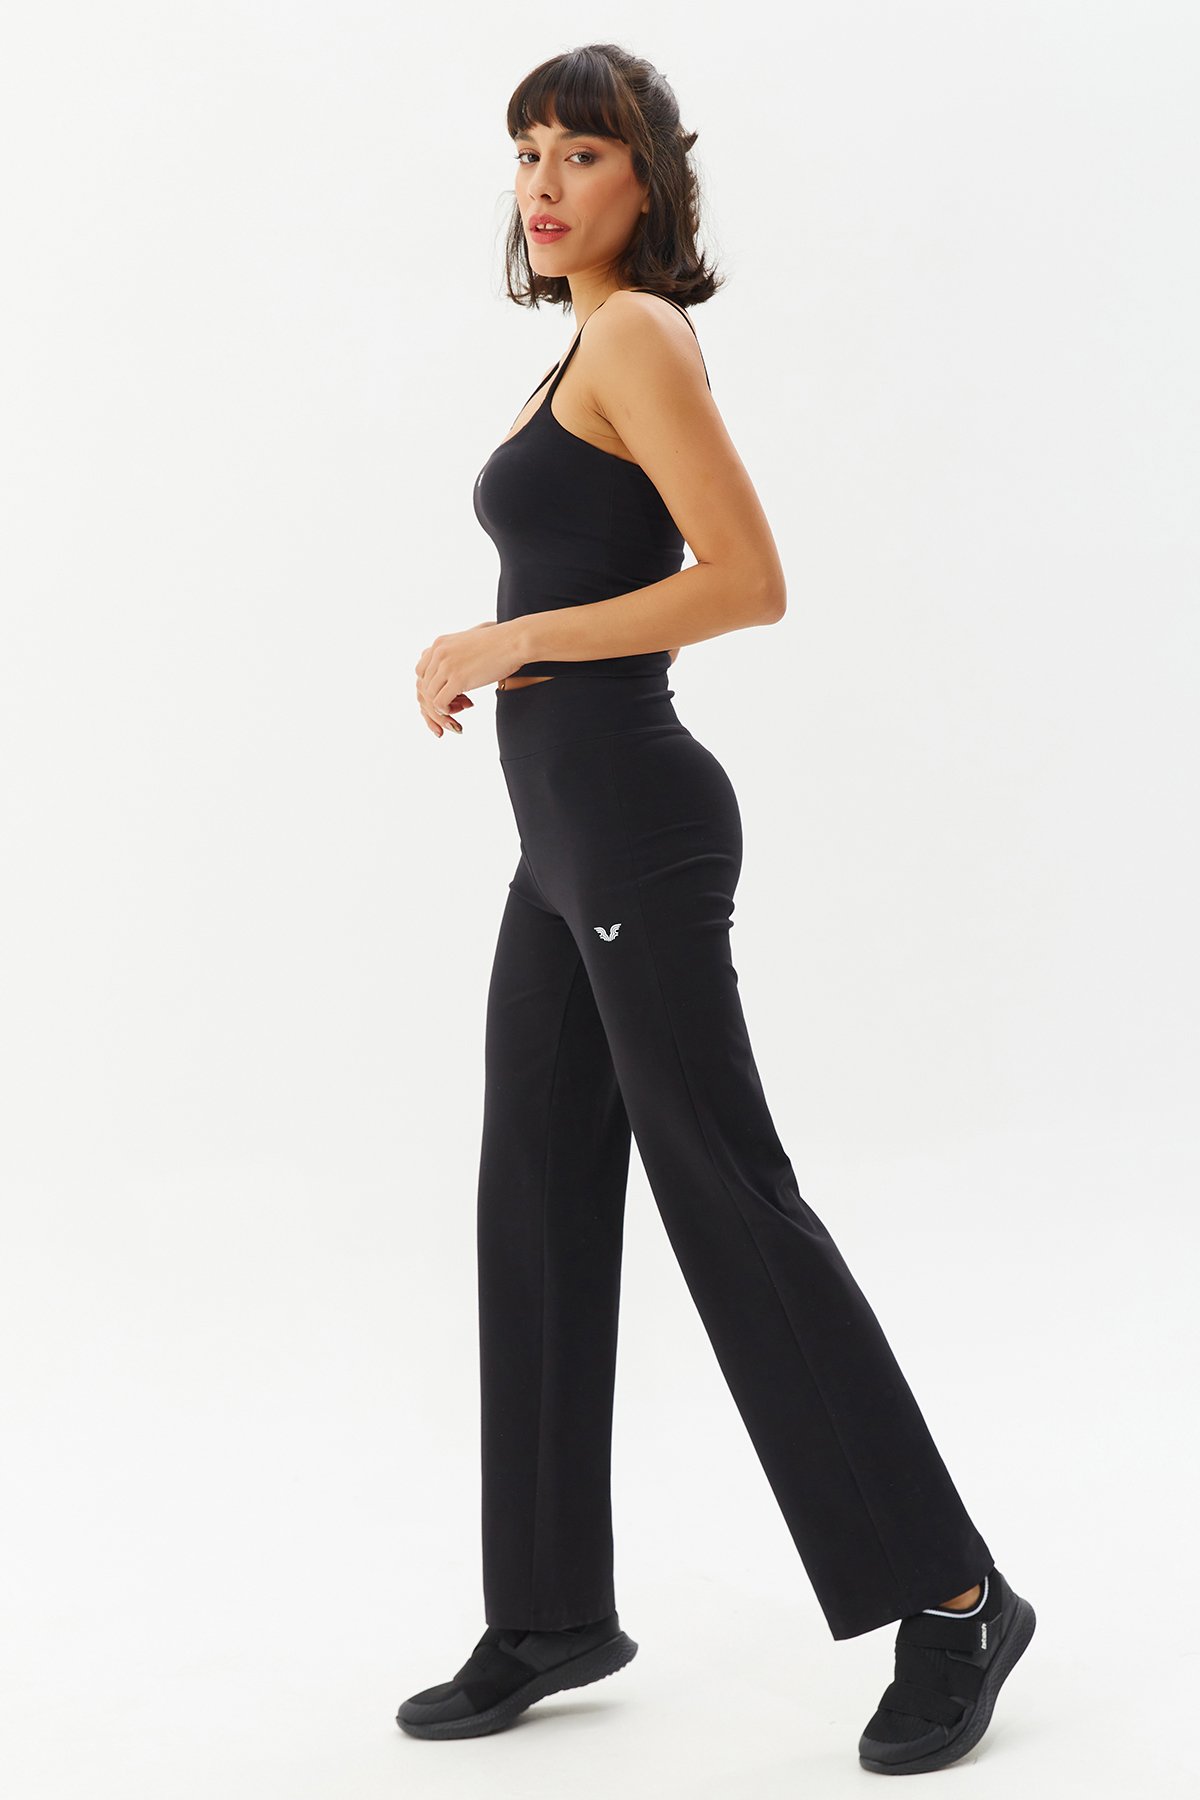 Kadın Siyah Yüksek Bel Yoga Pantolonu 0118